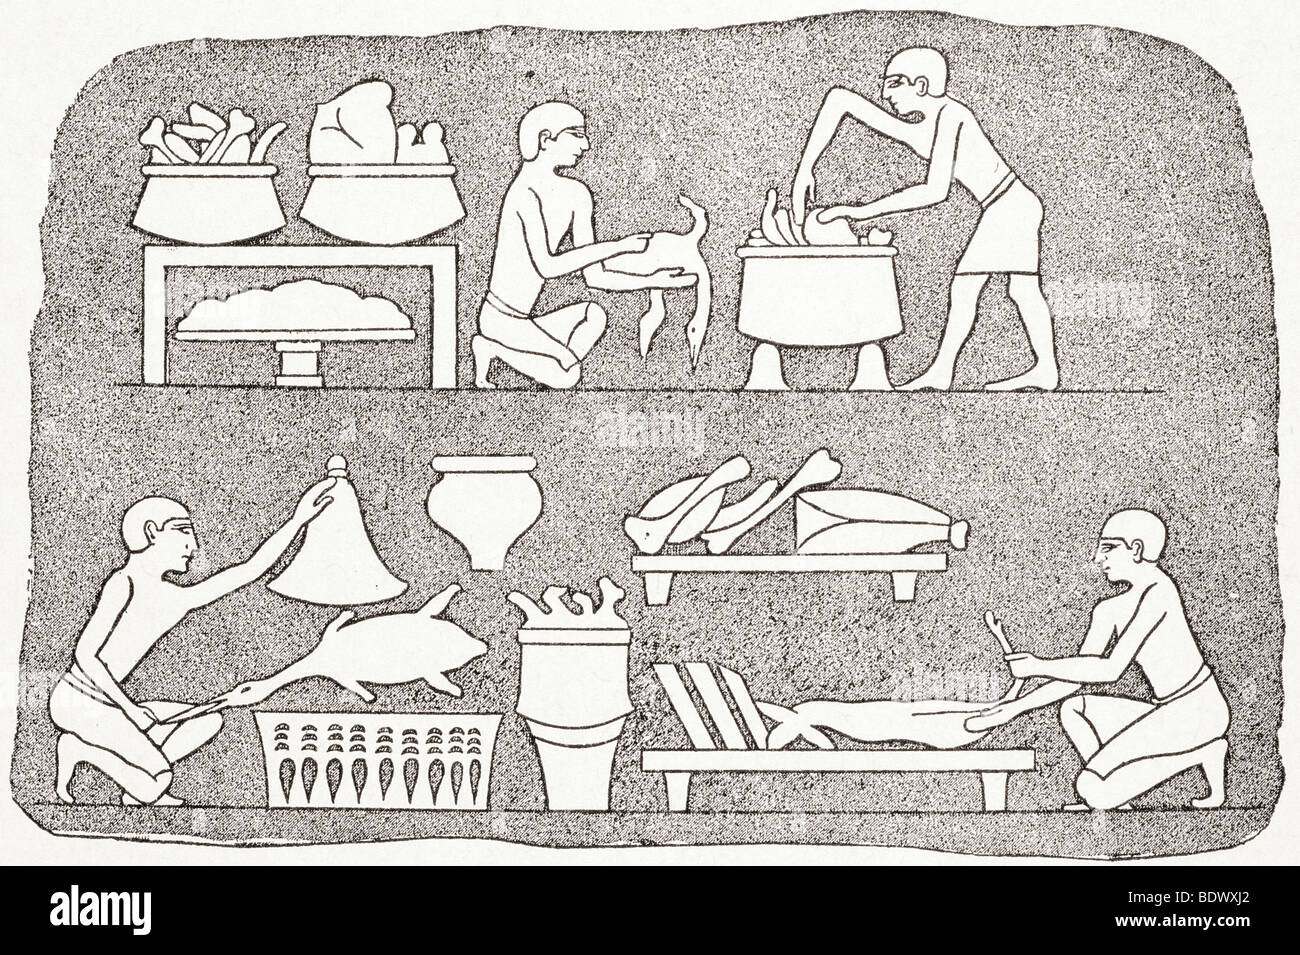 Cocina egipcia que muestra los procesos de preparación de alimentos Foto de stock